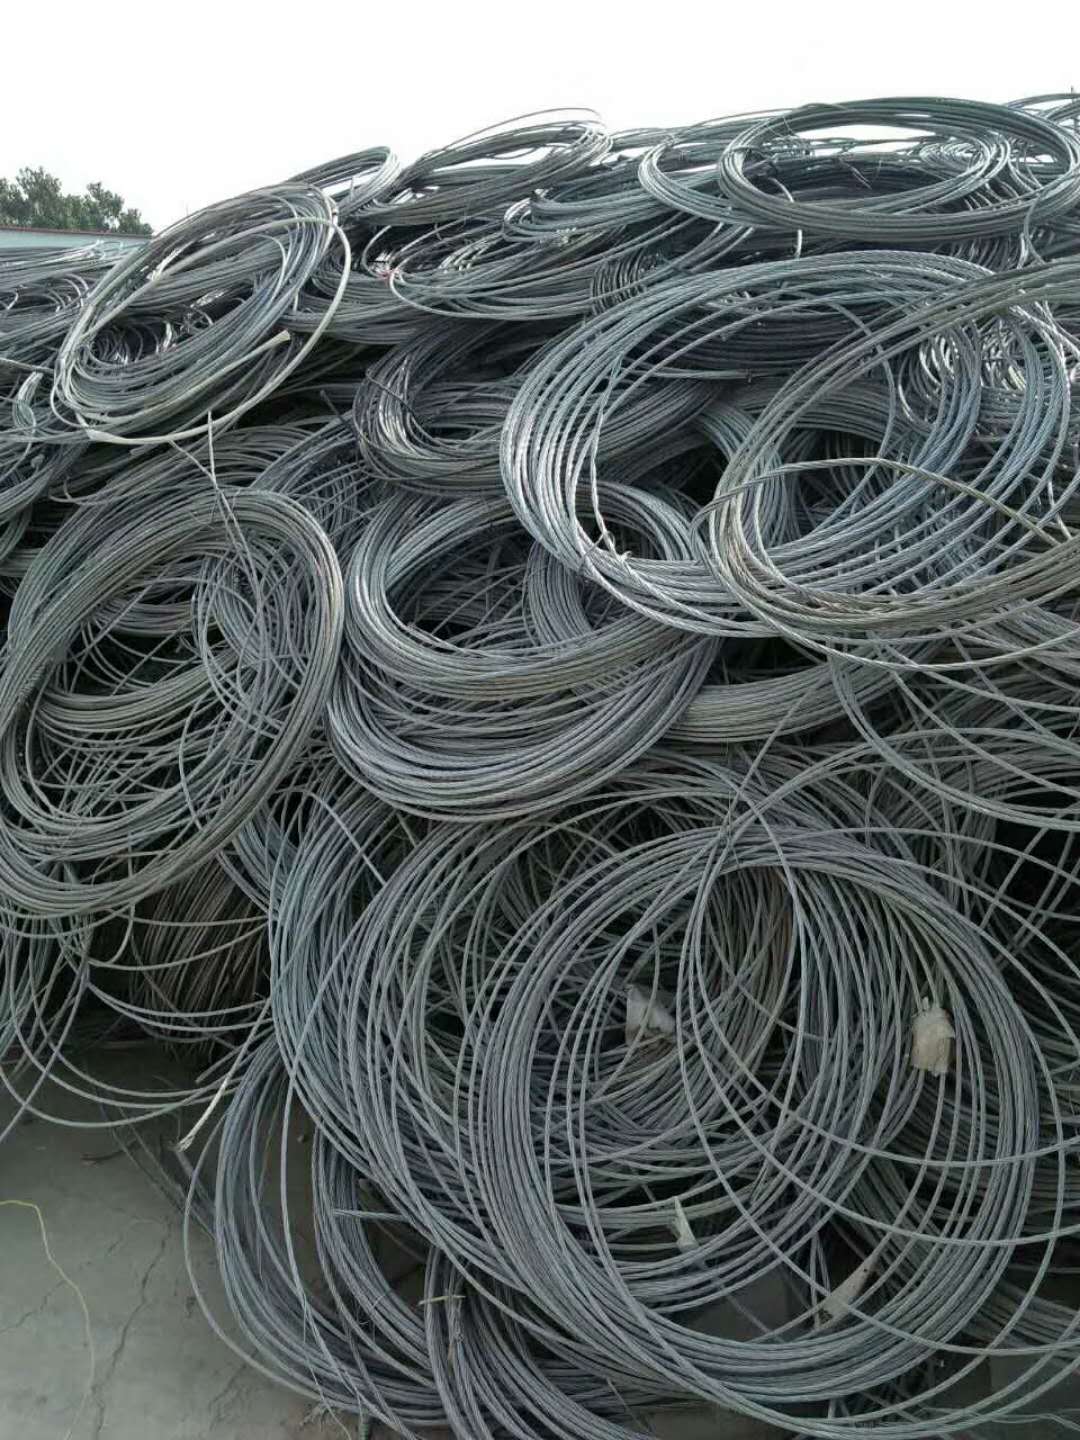 西安废旧电缆回收价格表 西安废电缆线回收 电缆价格新消息图片